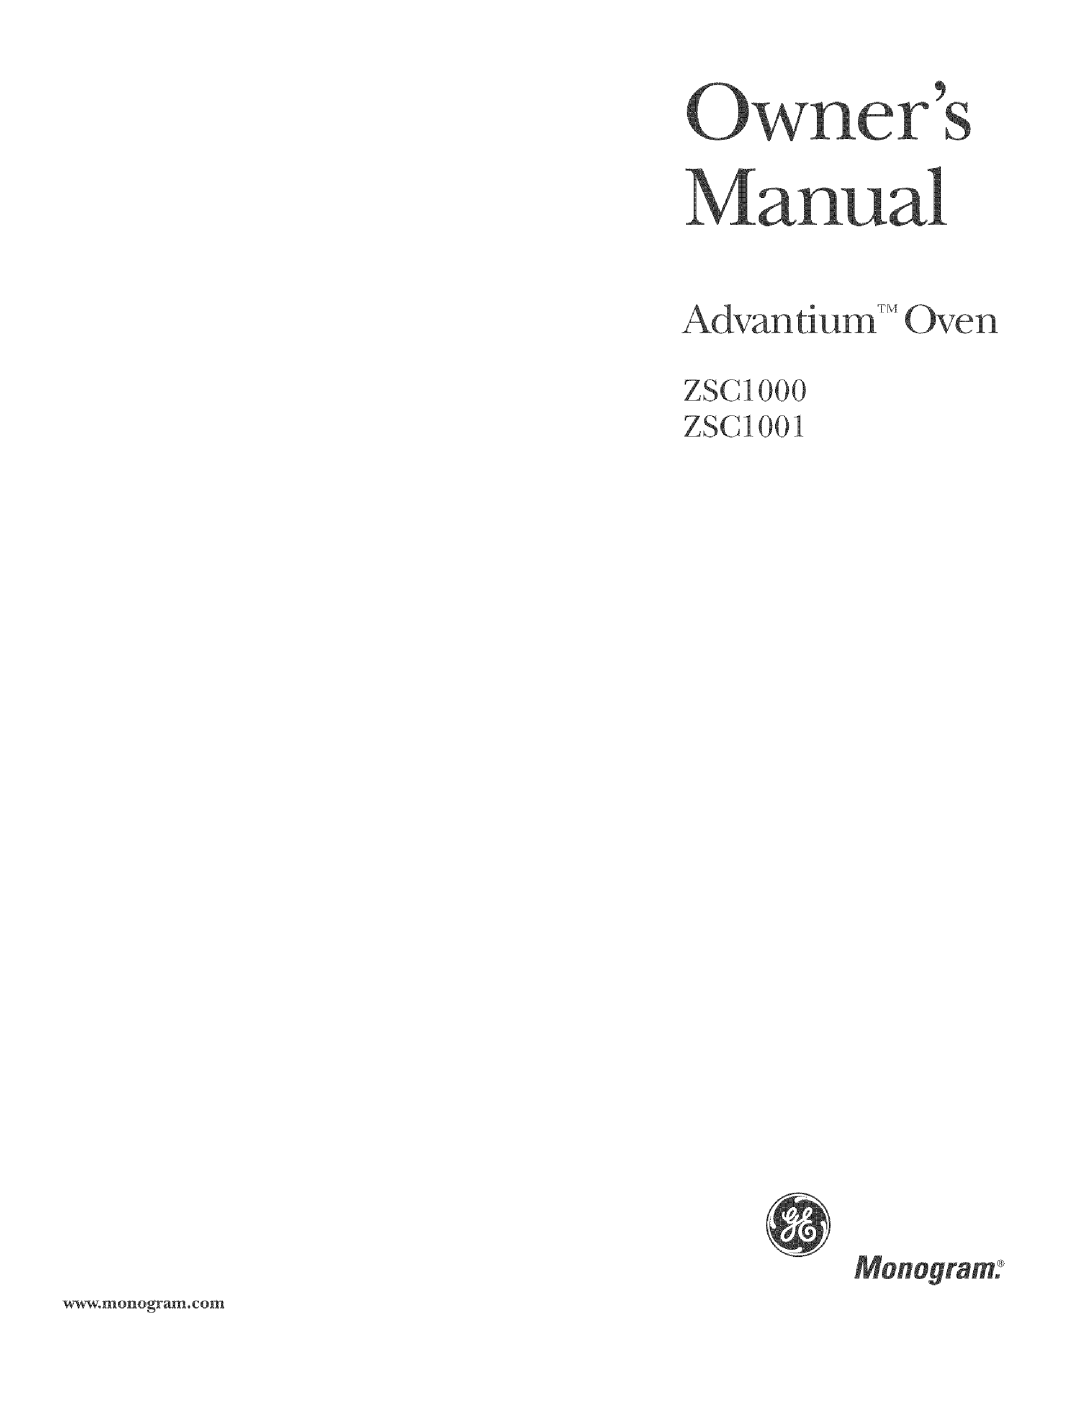 GE manual ZSCIO00 ZSCIO01, Monogram, Ovel l, wwwolllonoglcaIn, c o!1_ 